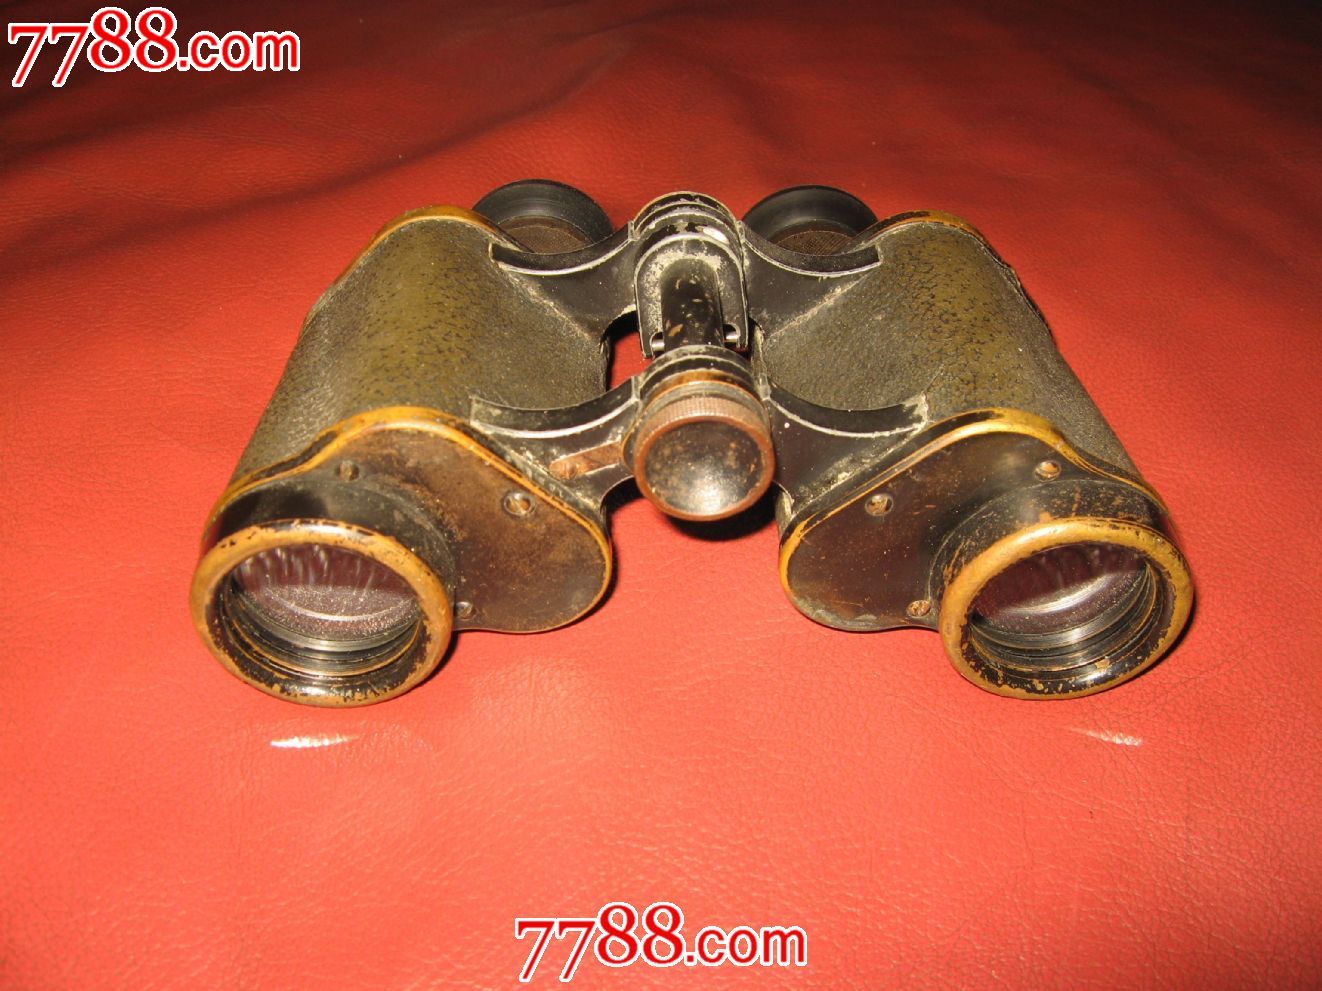 菜单 编号:望远镜: se26608211,2245 属性:军用望远镜,二战(1938